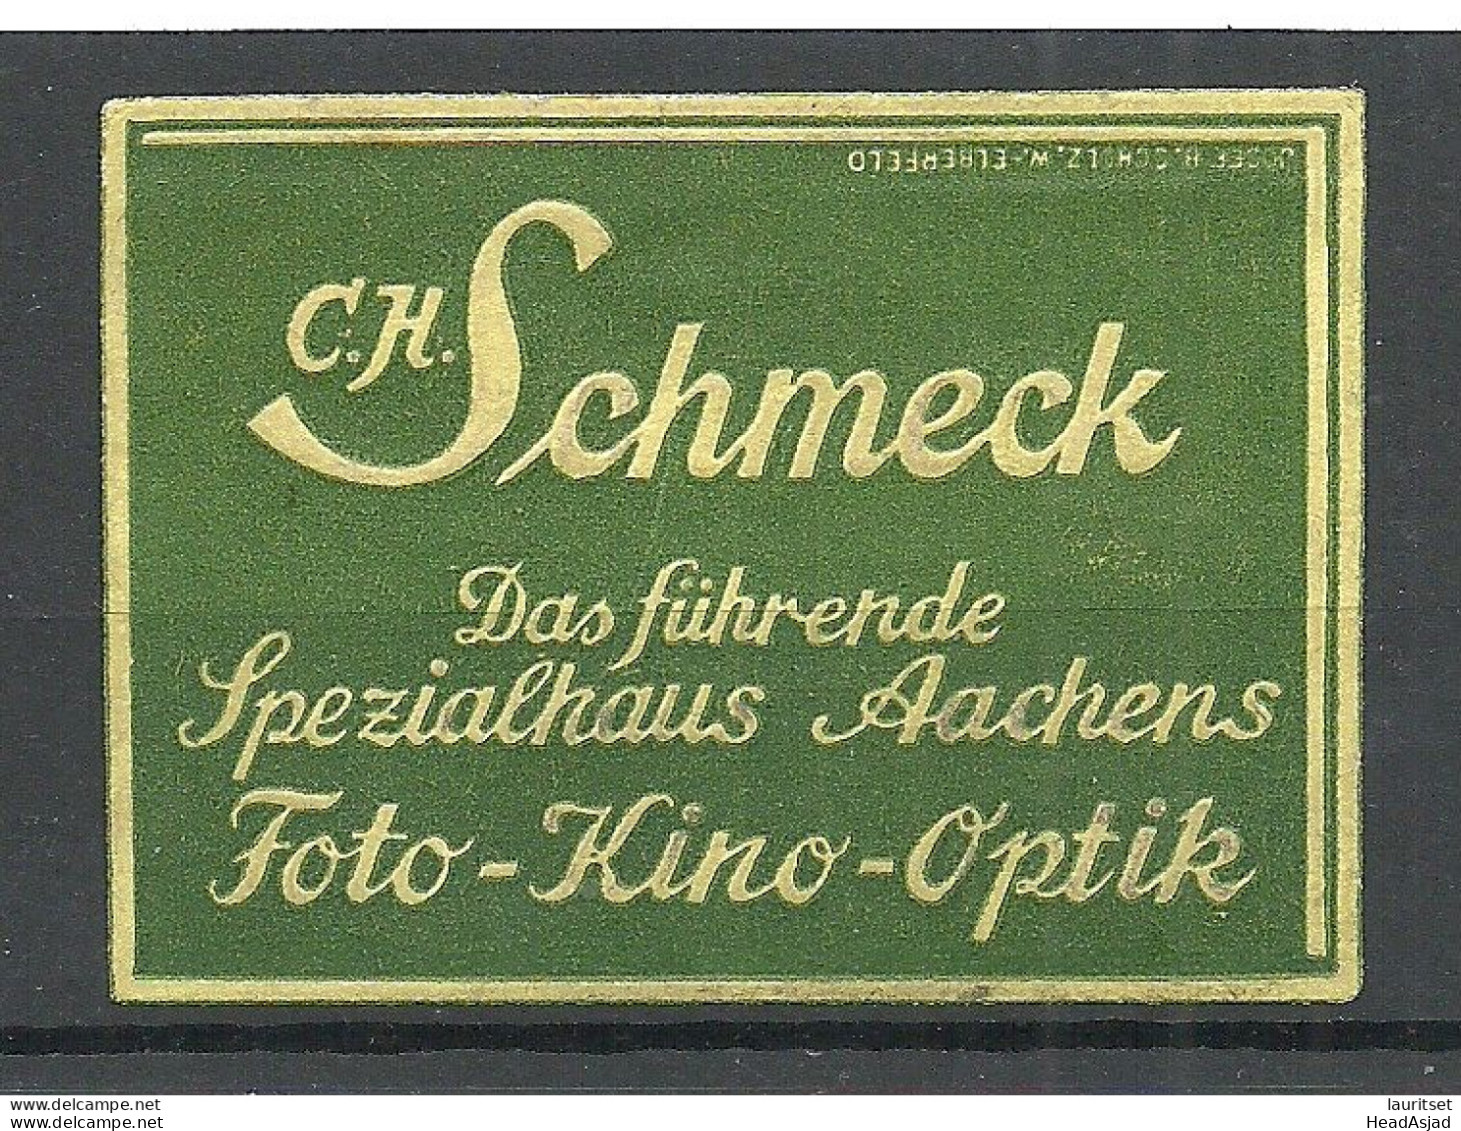 GERMANY Deutschland Ca 1915 C. H. Schmeck Photo Kino Optik Spezialhaus Aachen Advertising Poster Stamp Siegelmarke (*) - Photographie